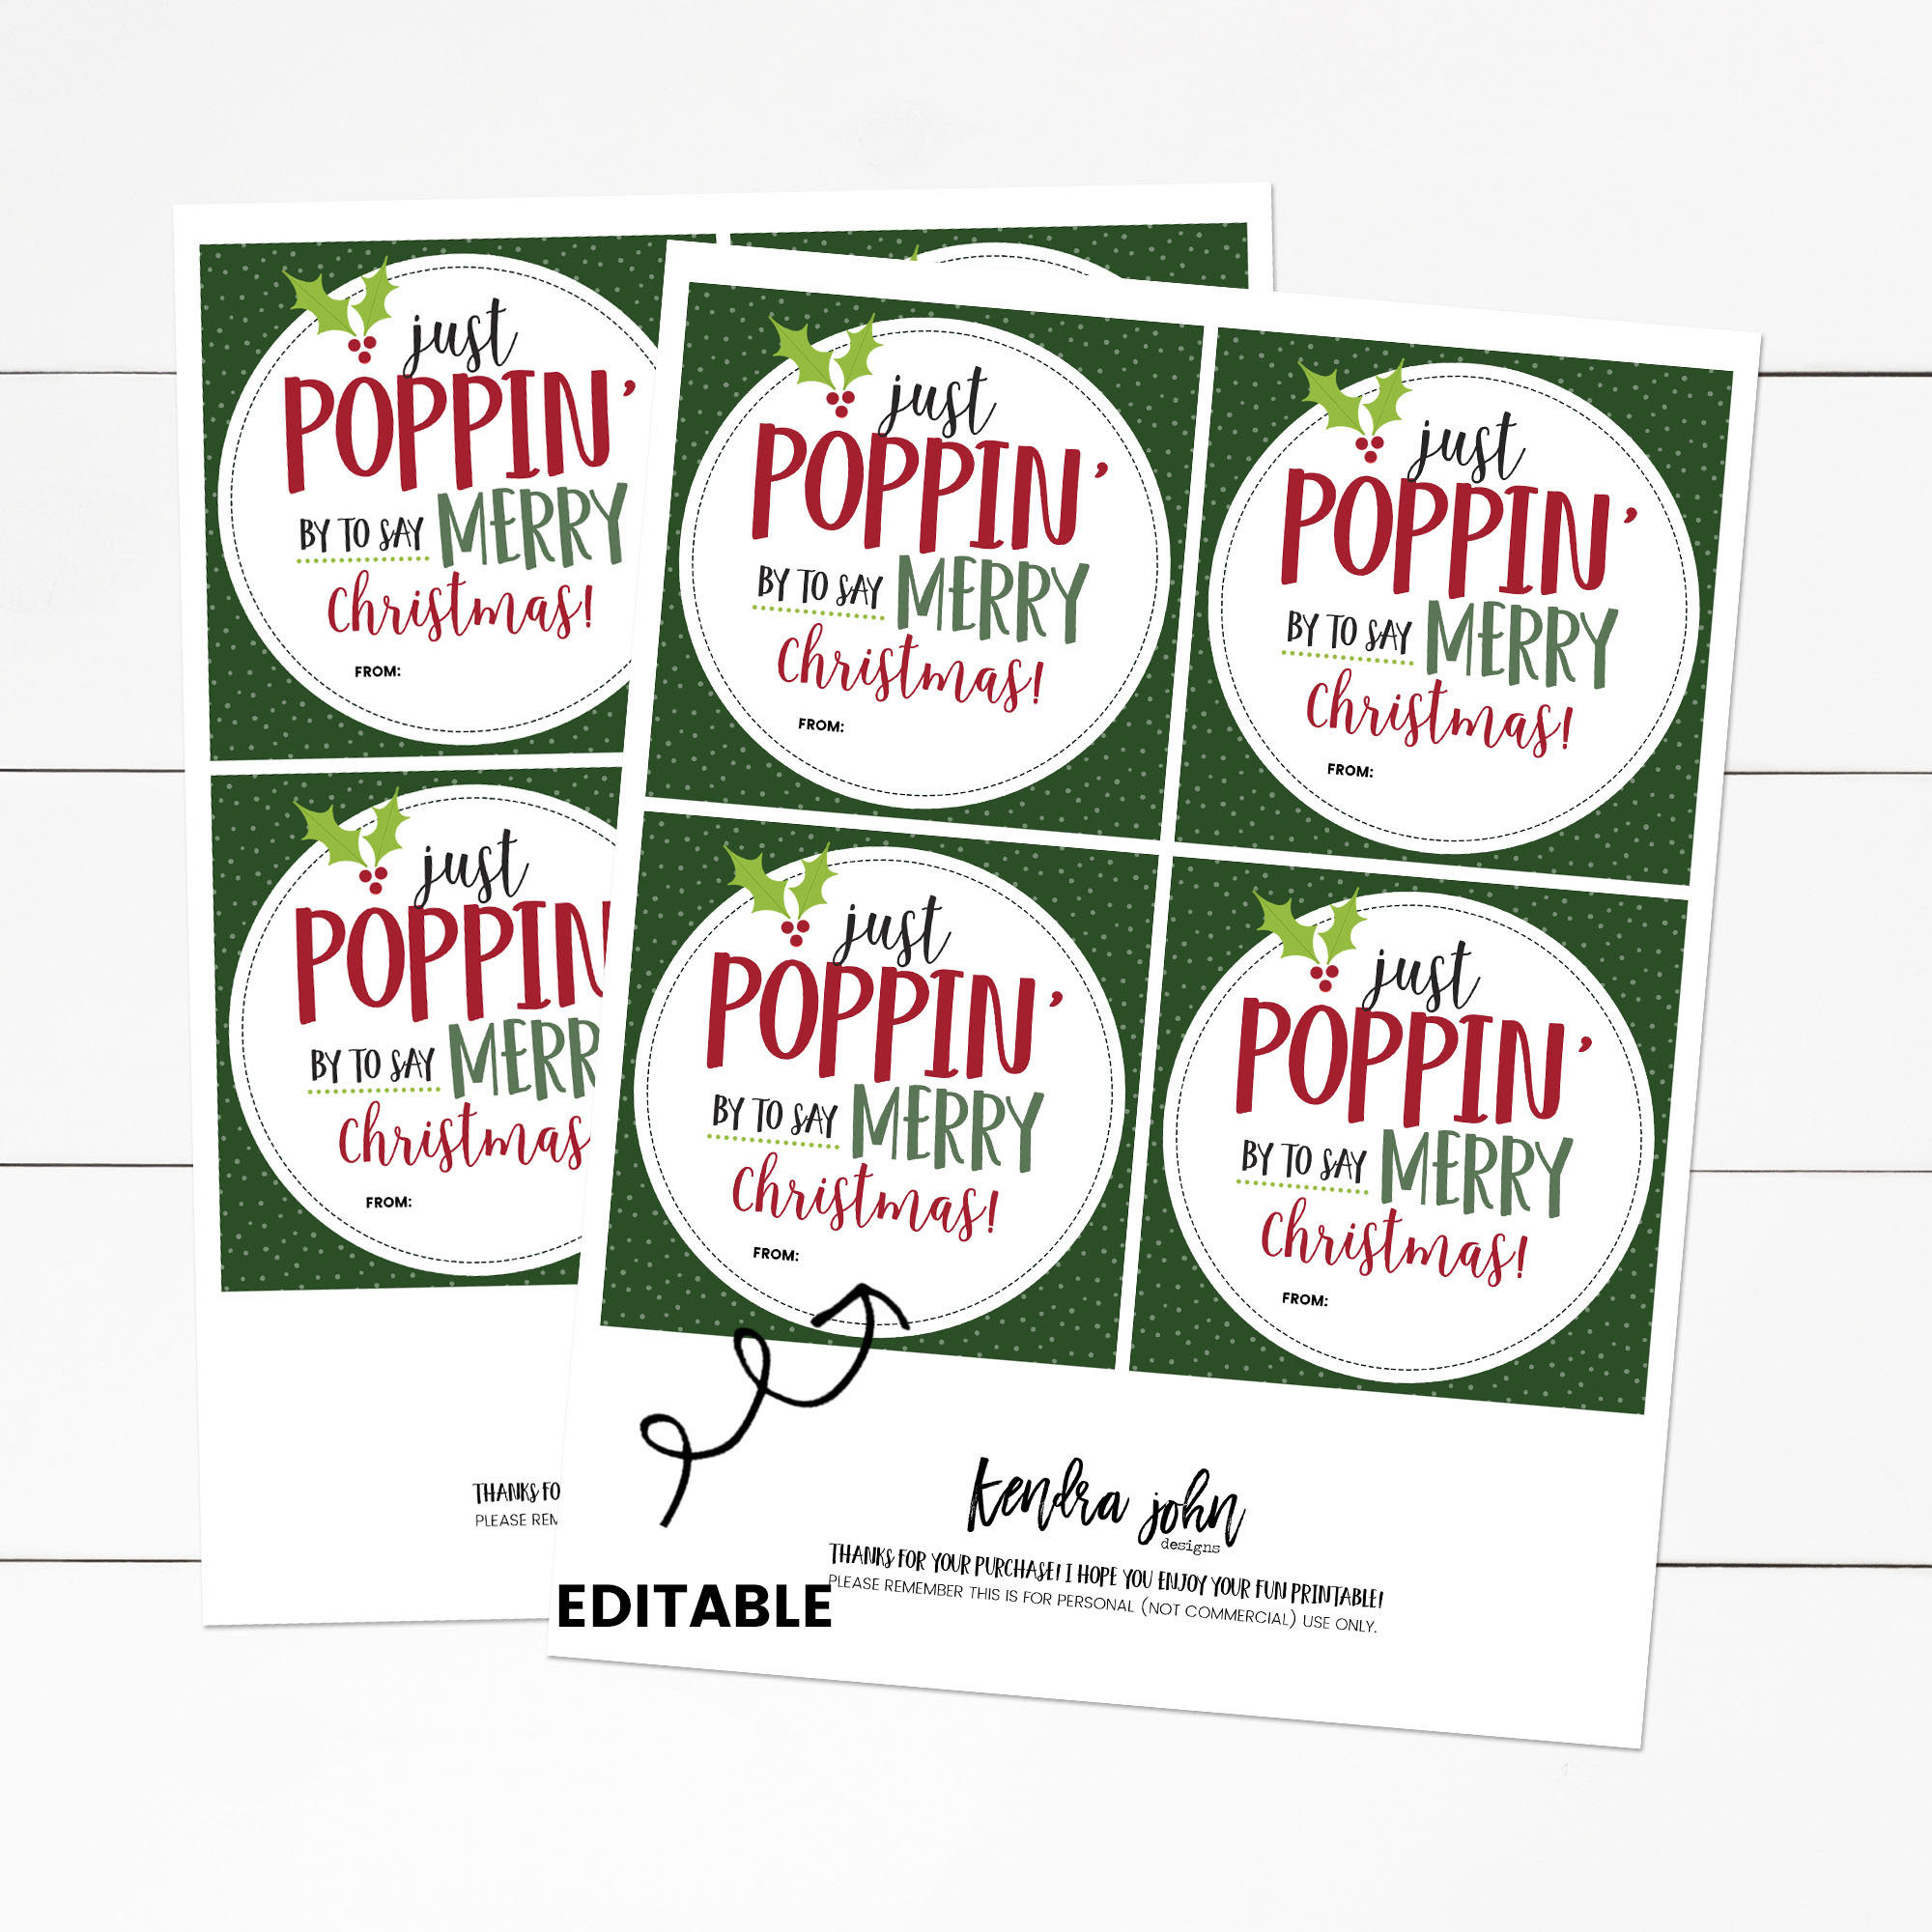 Christmas Pop It Fidget Gift Tags Circles IDCHRISTPOPIT0520 – Bailey Bunch  Designs